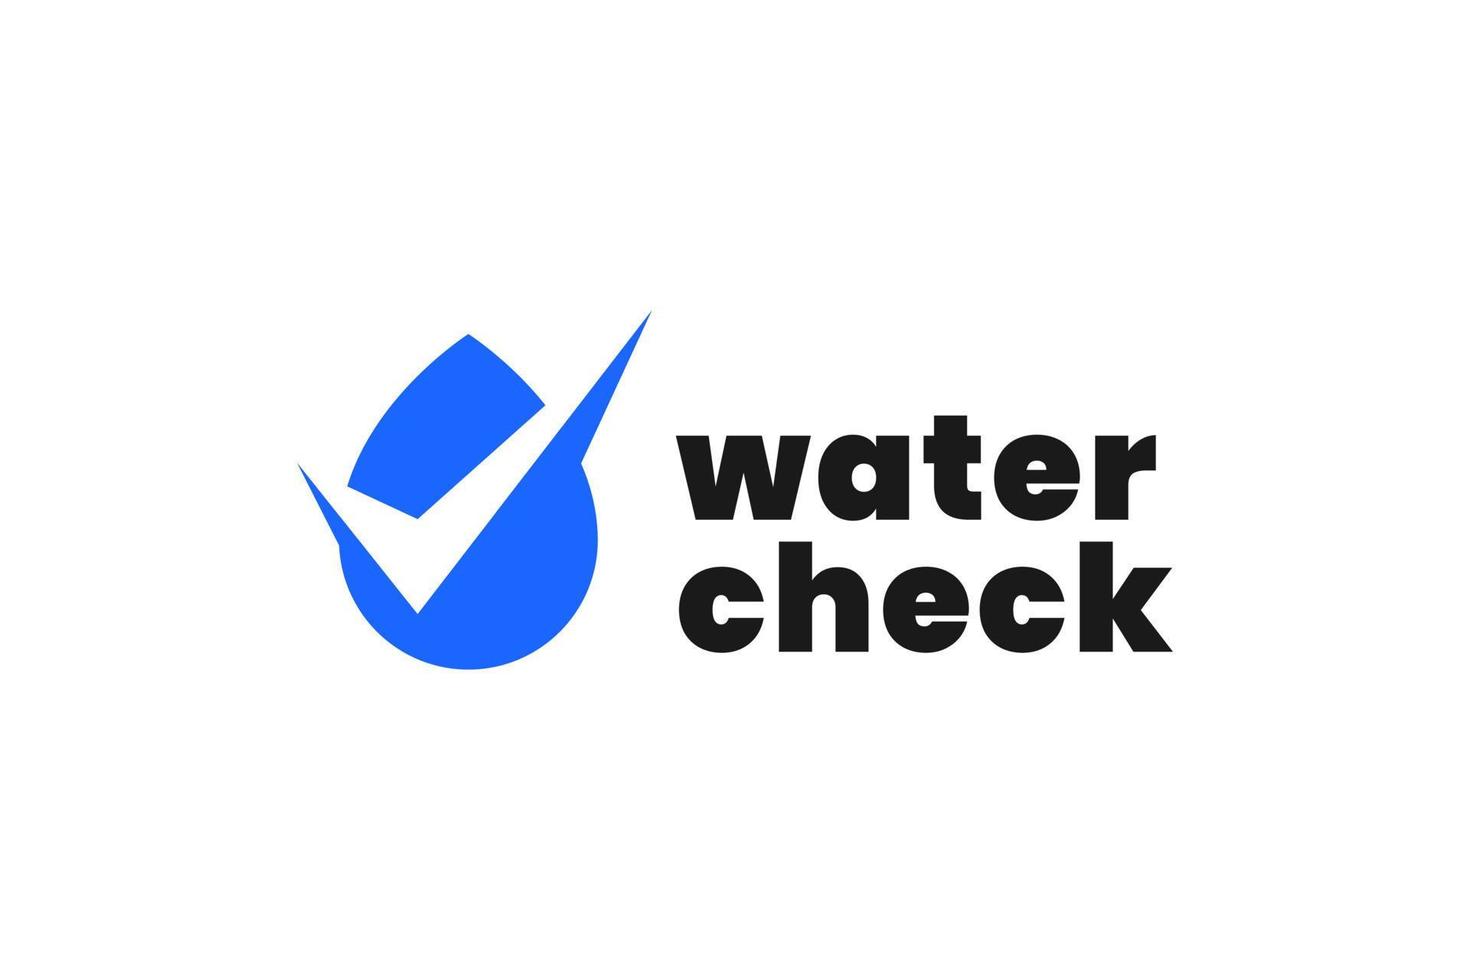 Water check logo design vector